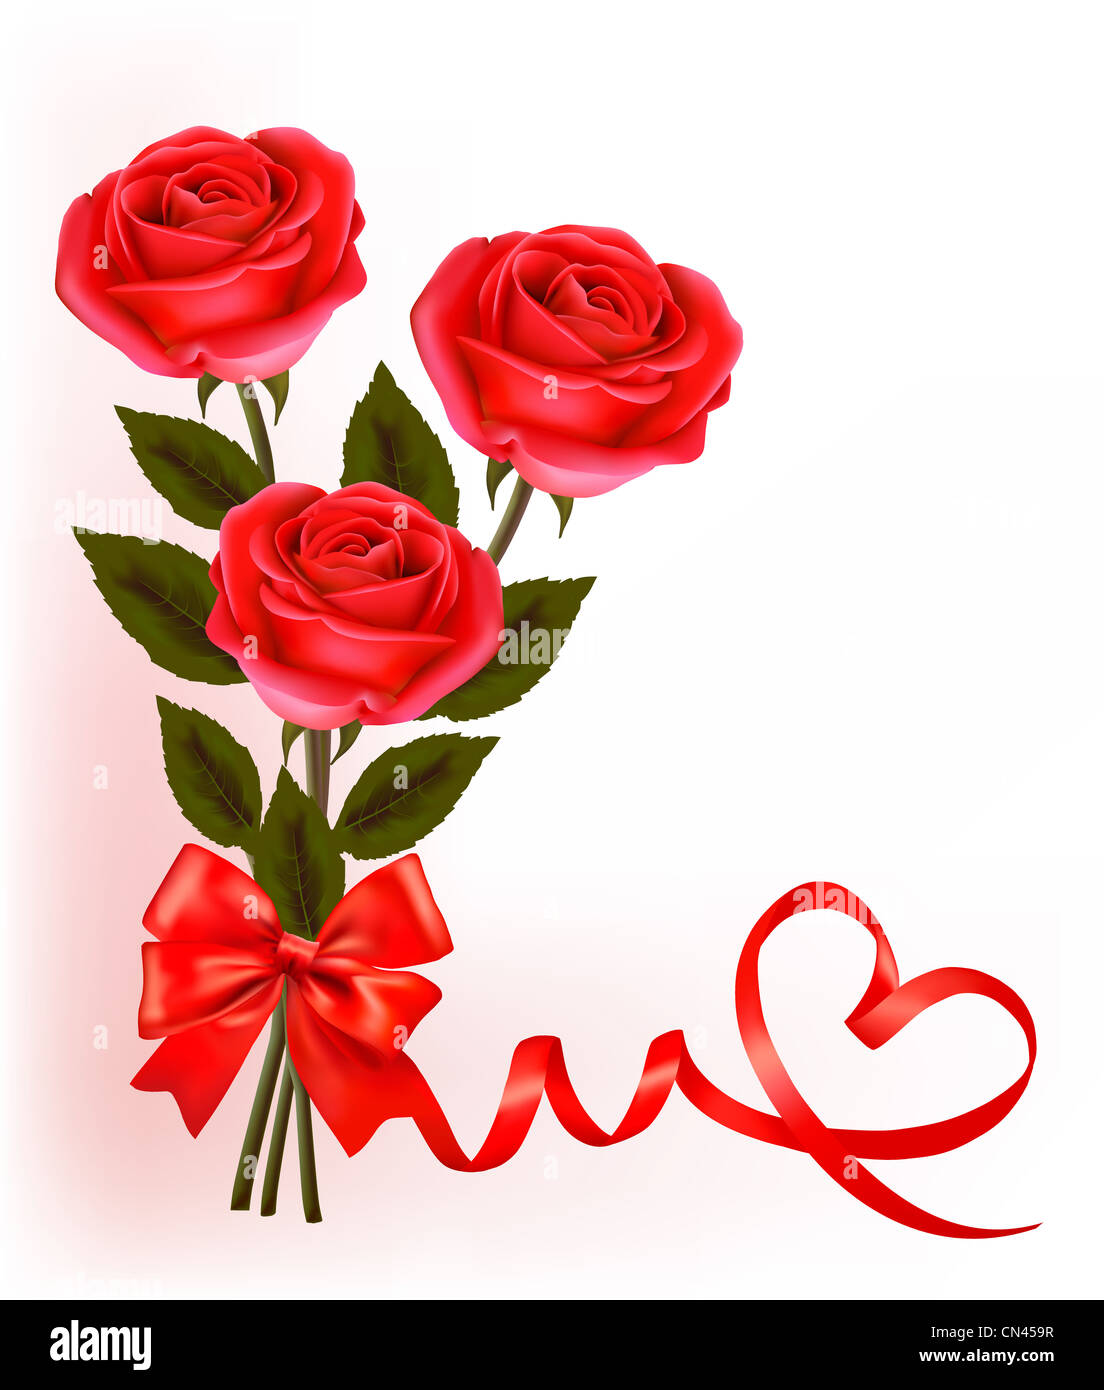 Drei Rosen mit Herz. Valentine Hintergrund Stockfotografie - Alamy